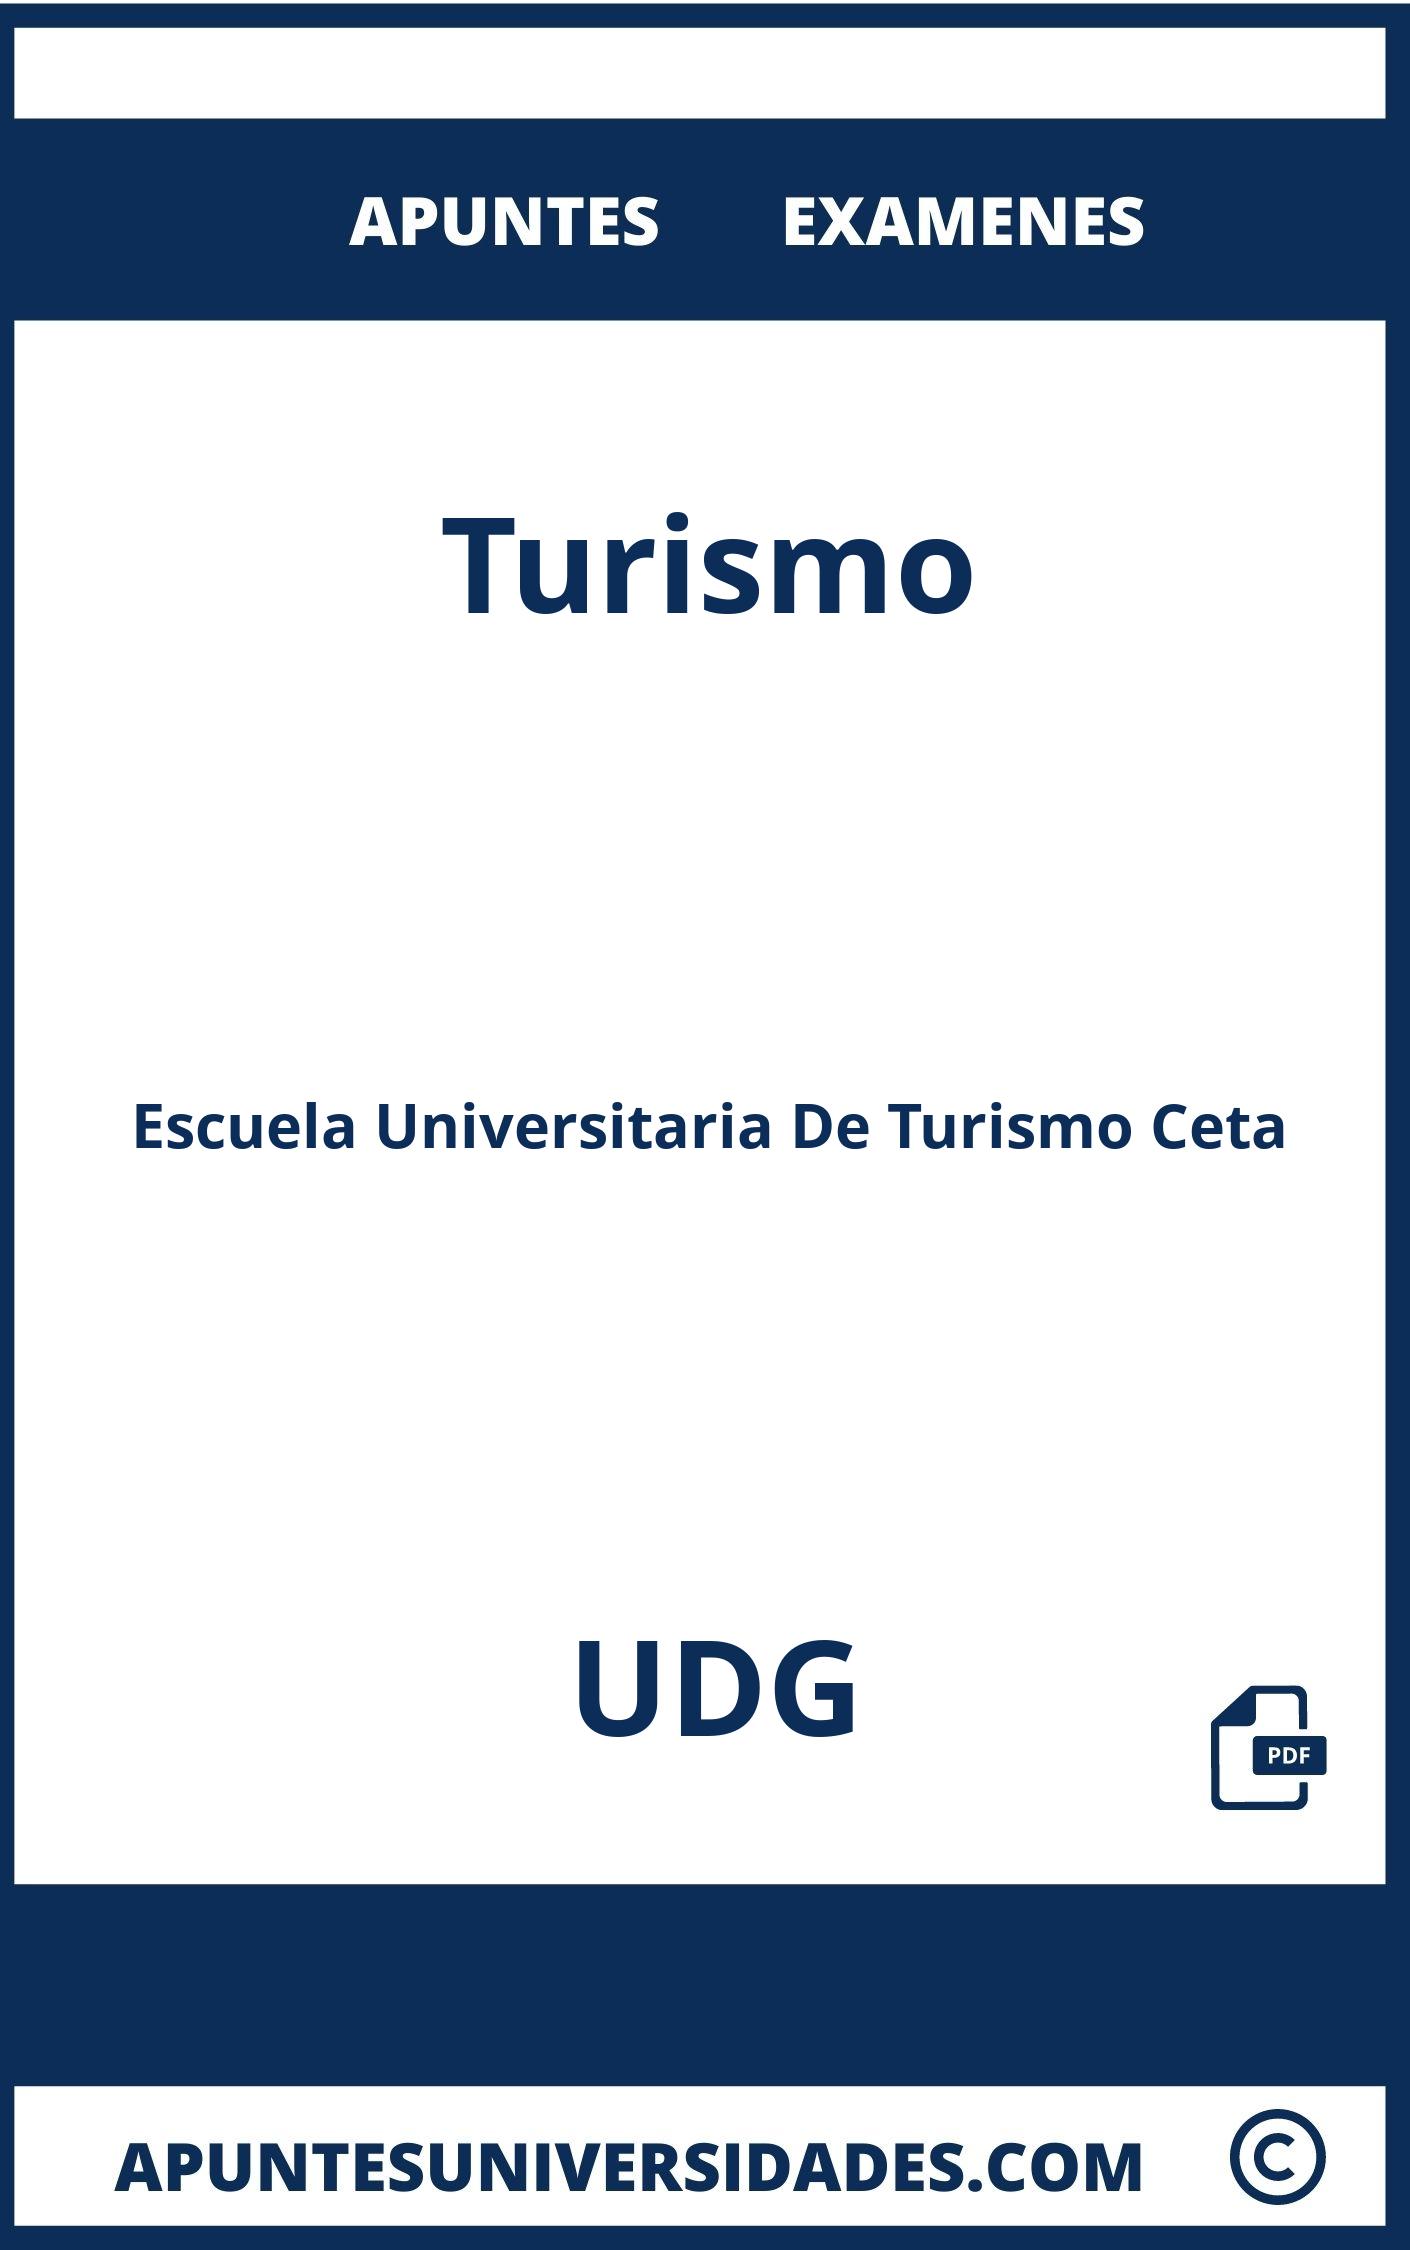 Apuntes y Examenes Turismo UDG